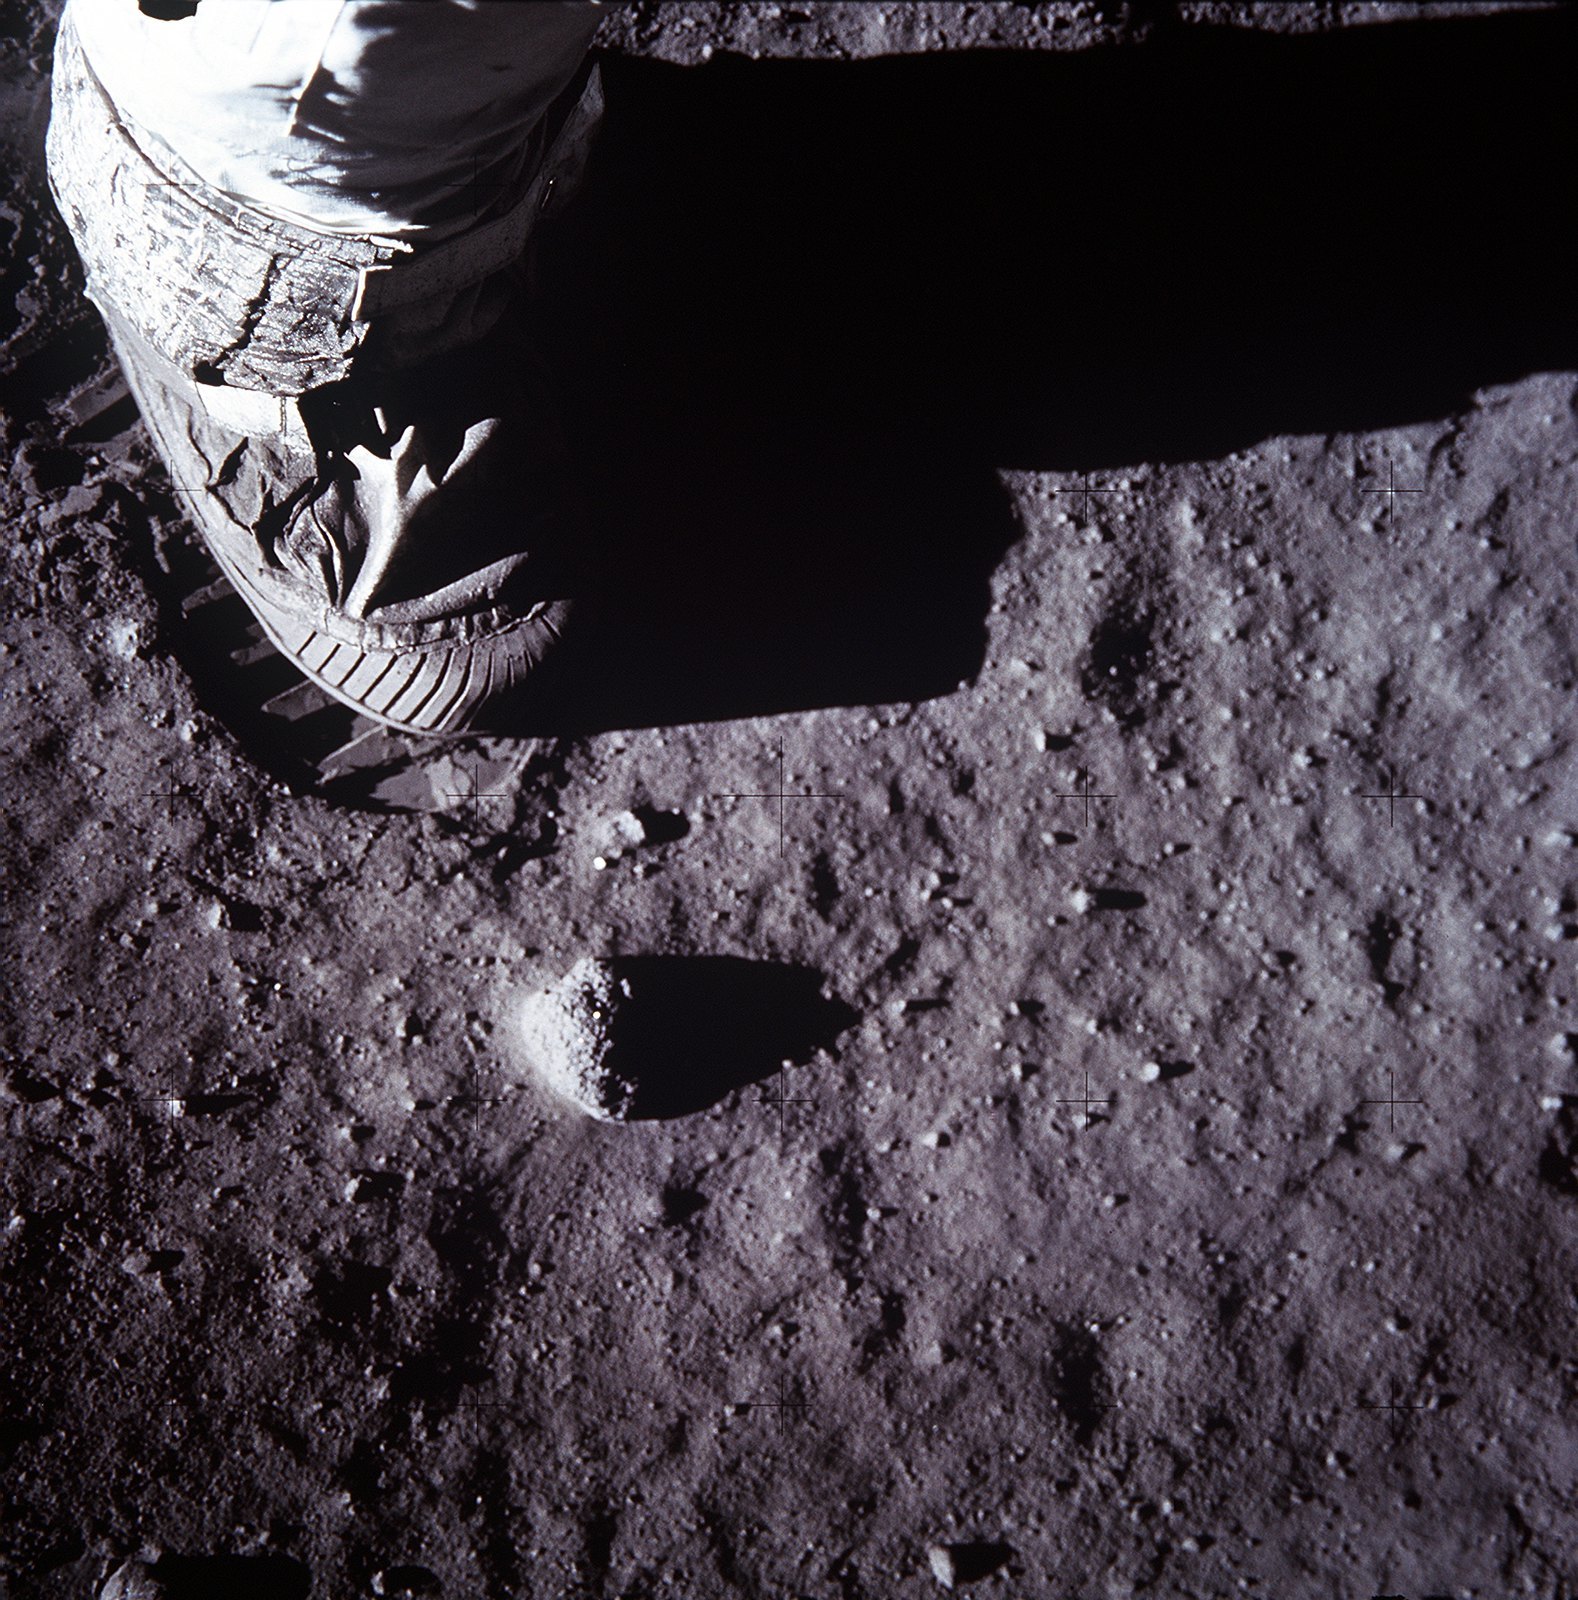 Vue du pied de la botte d'un astronaute sur le sol de Lune, mission Apollo 11, lumiere rasante du Soleil sur la Lune © NASA - as11-40-5880 - 20 Juillet 1969